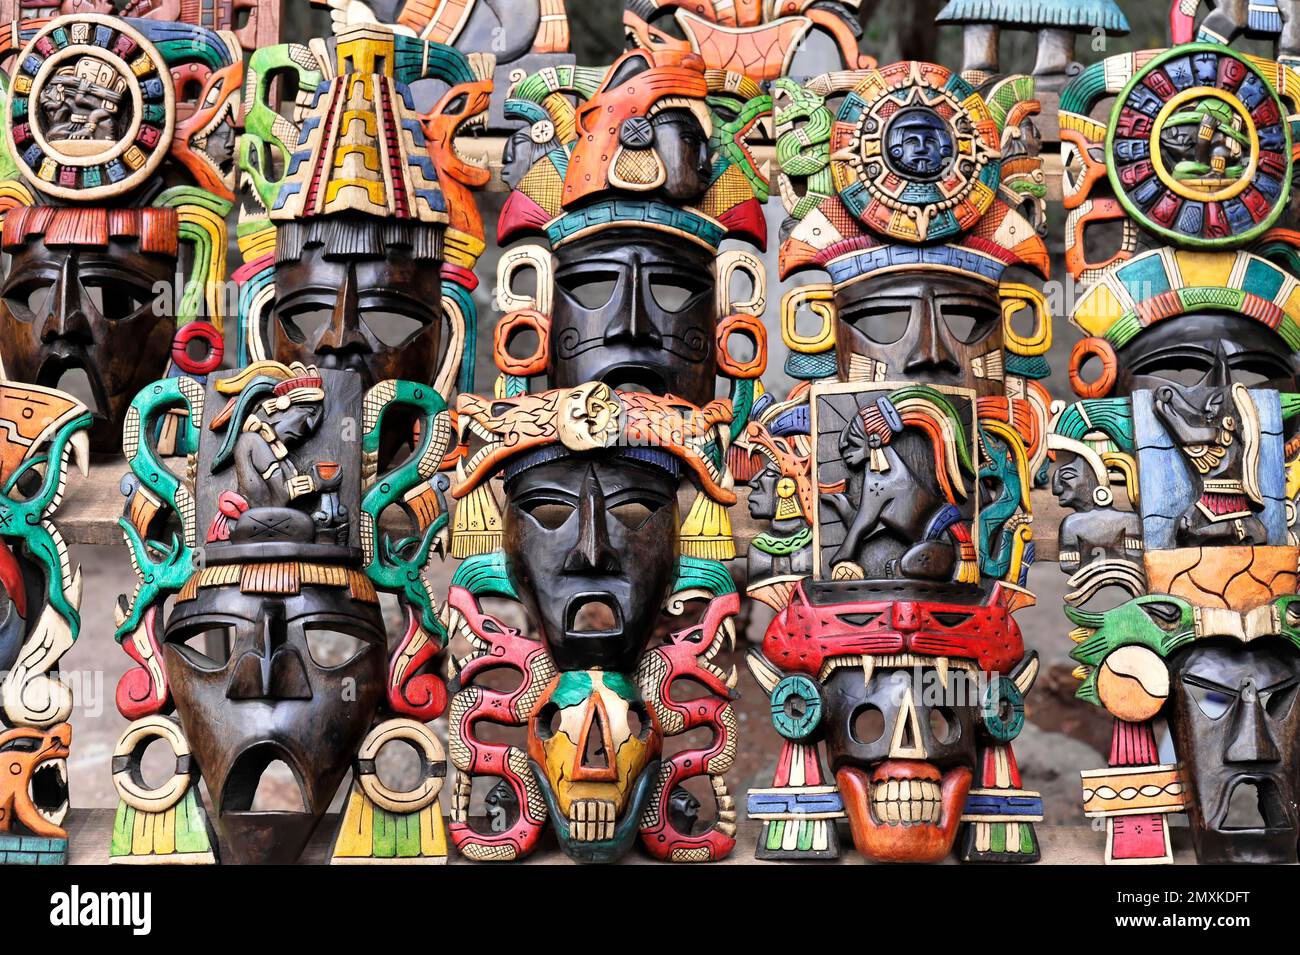 Maschere, artigianato, souvenir, nella zona d'ingresso delle rovine Maya di Chichén Itzá, Chichén Itzá, Yucatán, Messico, America Centrale Foto Stock